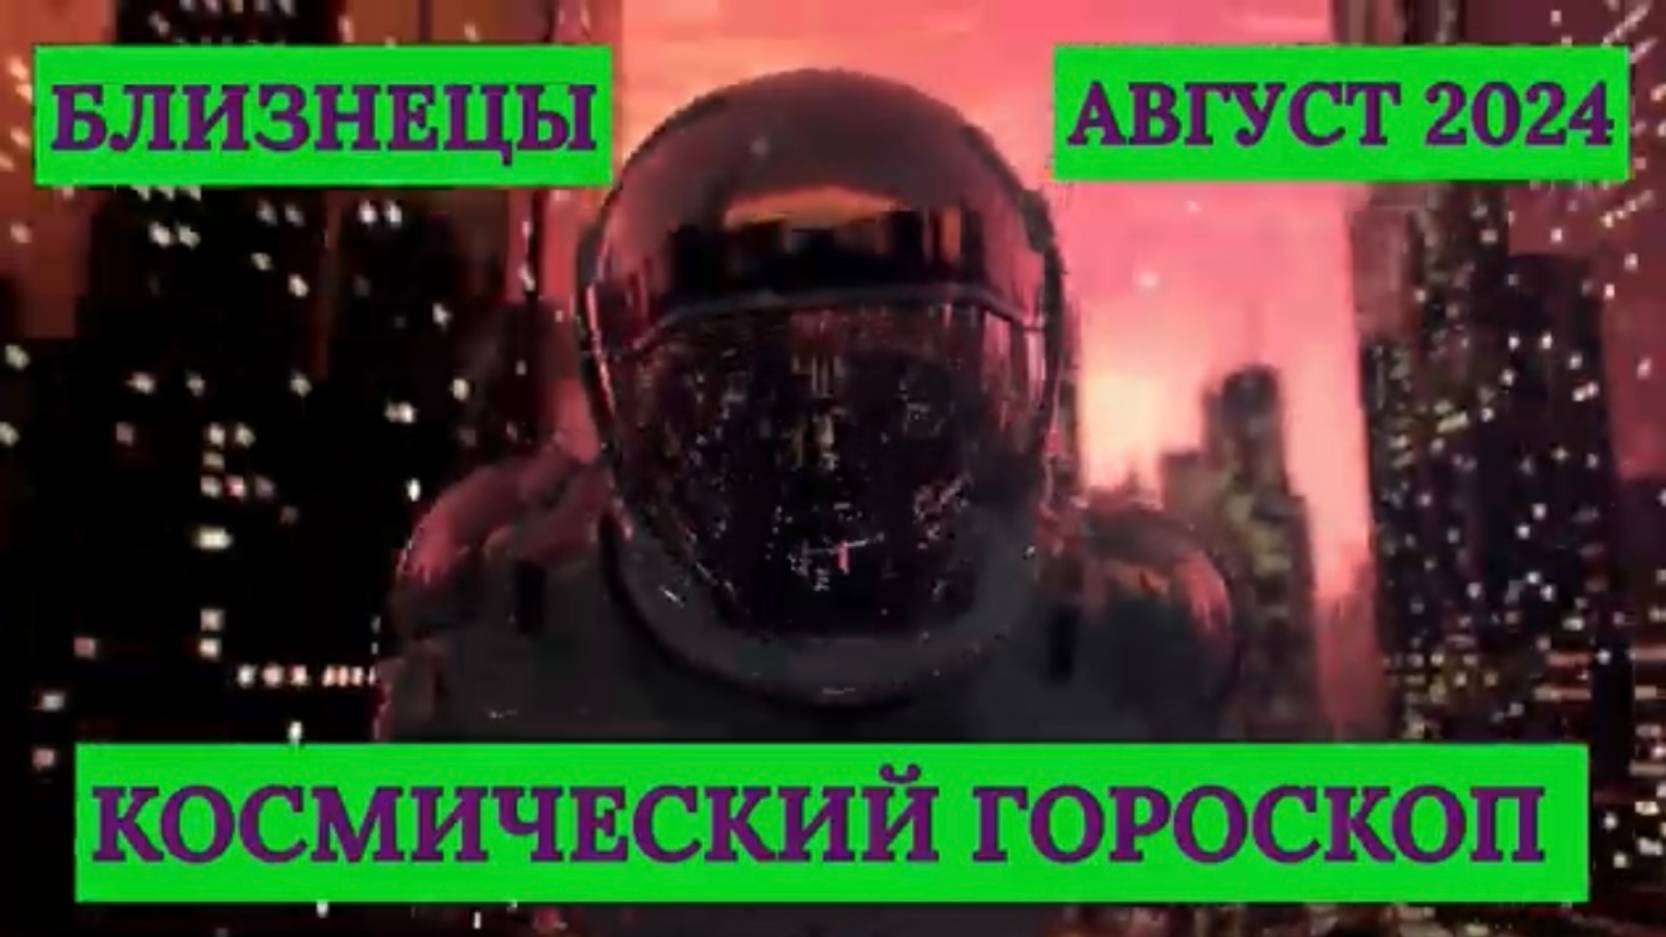 БЛИЗНЕЦЫ - "КОСМИЧЕСКИЙ ГОРОСКОП на АВГУСТ-2024"